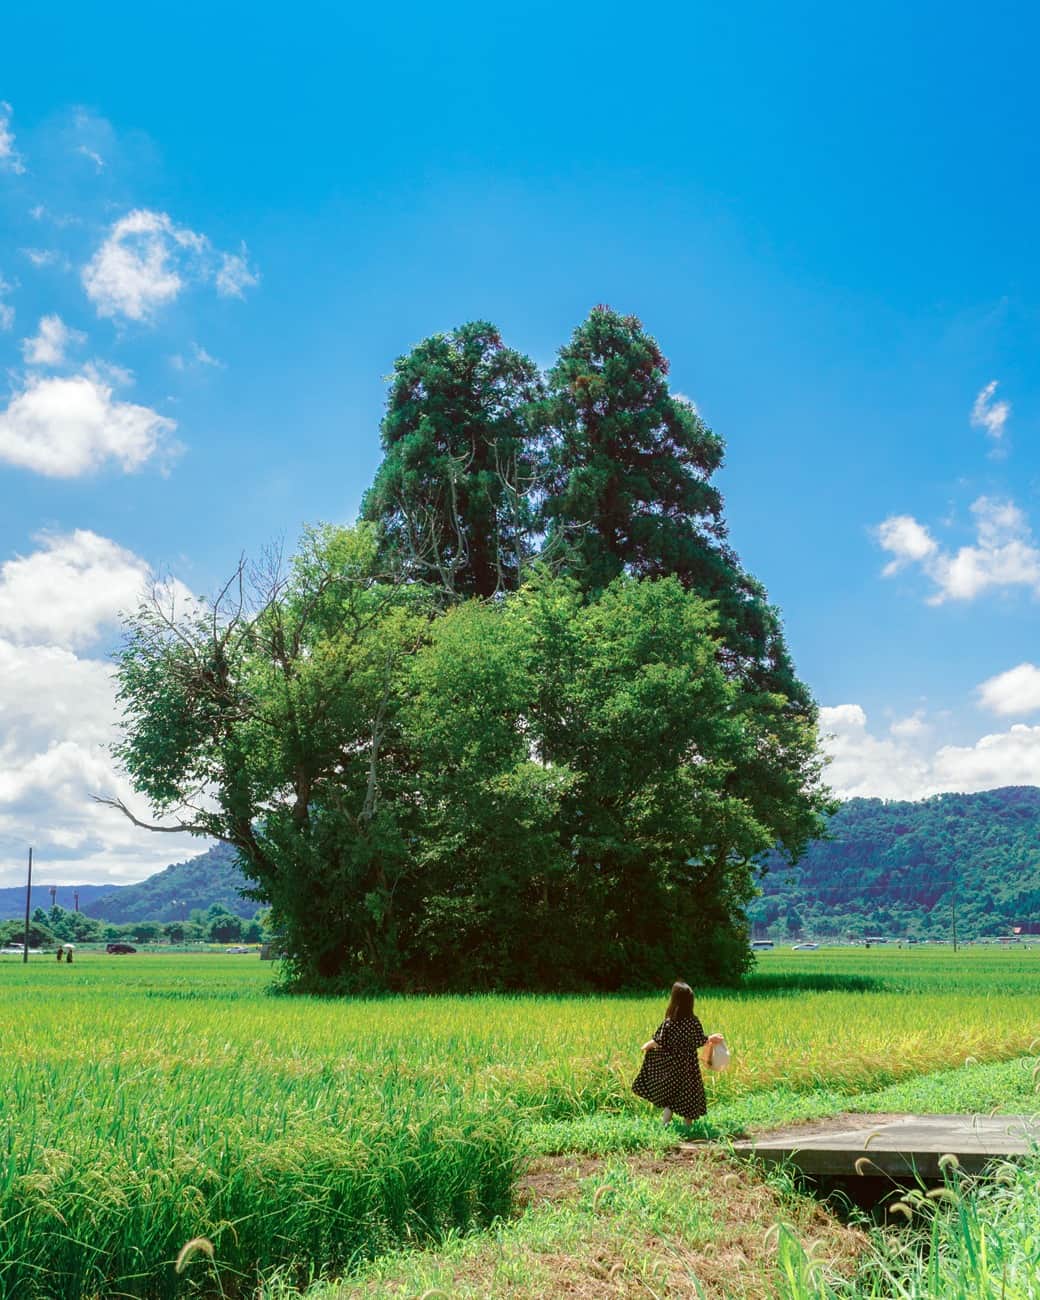 関西電力株式会社のインスタグラム：「＼まるでジブリの世界✨　滋賀県で不思議な出会い🌲／  本日は、田んぼの真ん中にそびえる「トトロにそっくりな木」をパシャリ📸  滋賀県高島市でジブリの世界を感じられる珍スポット、通称「トトロの木」。   何本かの樹木が隣接することにより、見る角度によってはあの「トトロ」に見えることからそのように呼ばれるようになったとのことです。なお、正式名称は「伊井の木立」というそうです👀  また、地元では「大城宮（だいじょうぐ）様」とも呼ばれ、地元の方々が毎年手入れをしながら大切に守ってこられた場所とのこと✨  滋賀に訪れた際にはぜひチェックしてみたください♪  みなさんオススメの関西のスポットがあれば、コメントで教えてください！  #関西電力 #灯りフォト部  #トトロの木 #トトロ #ジブリ #夏の思い出 #日本の絶景 #日本の景色 #関西旅行 #関西観光 #関西の旅 #夏の風物詩 #湖畔の景色 #写真好きな人と繋がりたい #カメラ好きな人と繋がりたい」